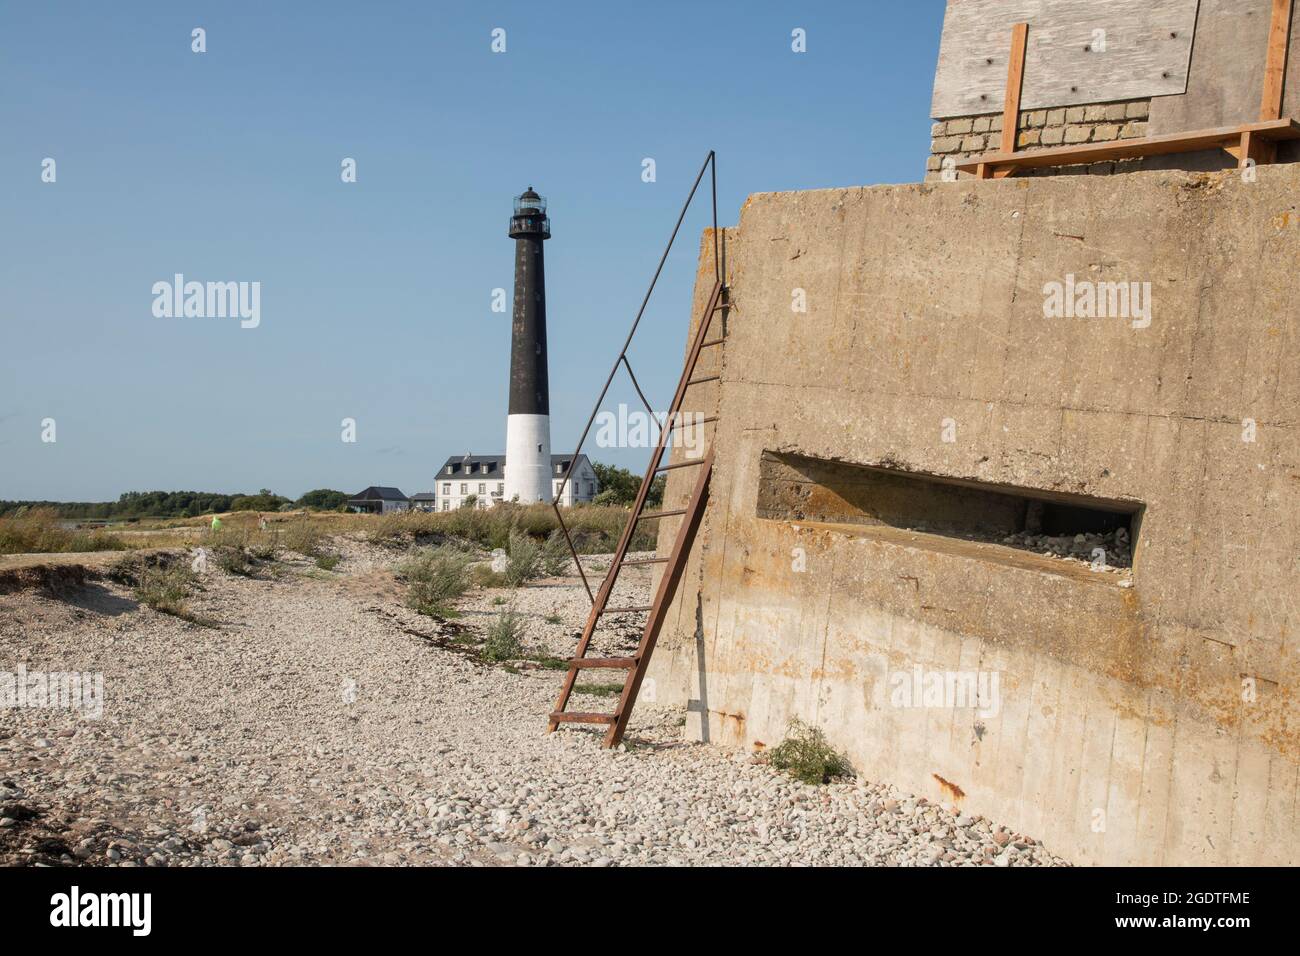 Sõrve lighthouse in Saaremaa, Estonia Stock Photo